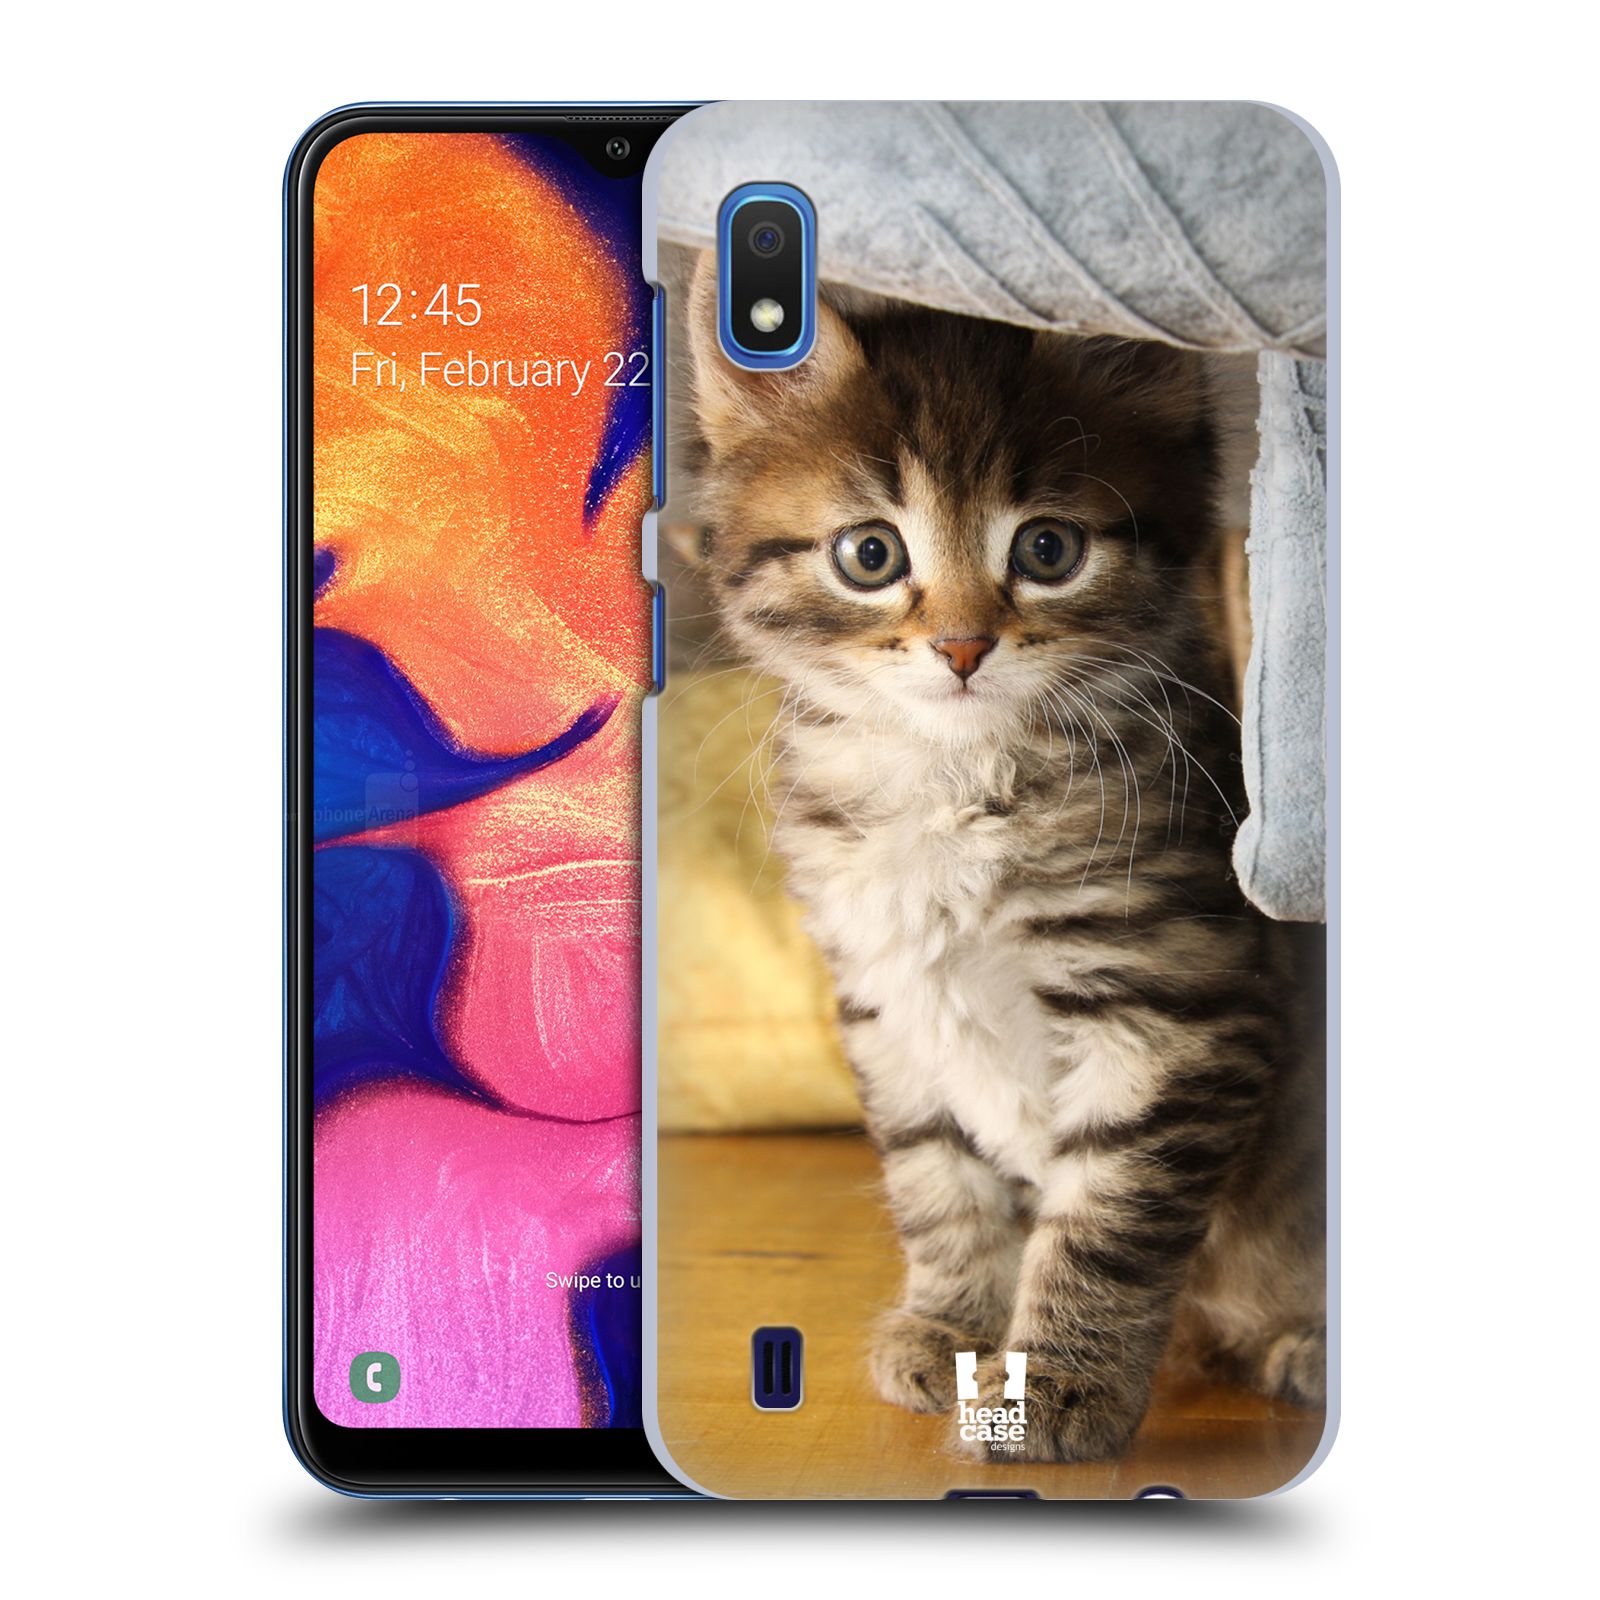 Pouzdro na mobil Samsung Galaxy A10 - HEAD CASE - vzor Kočičky koťata foto mourek